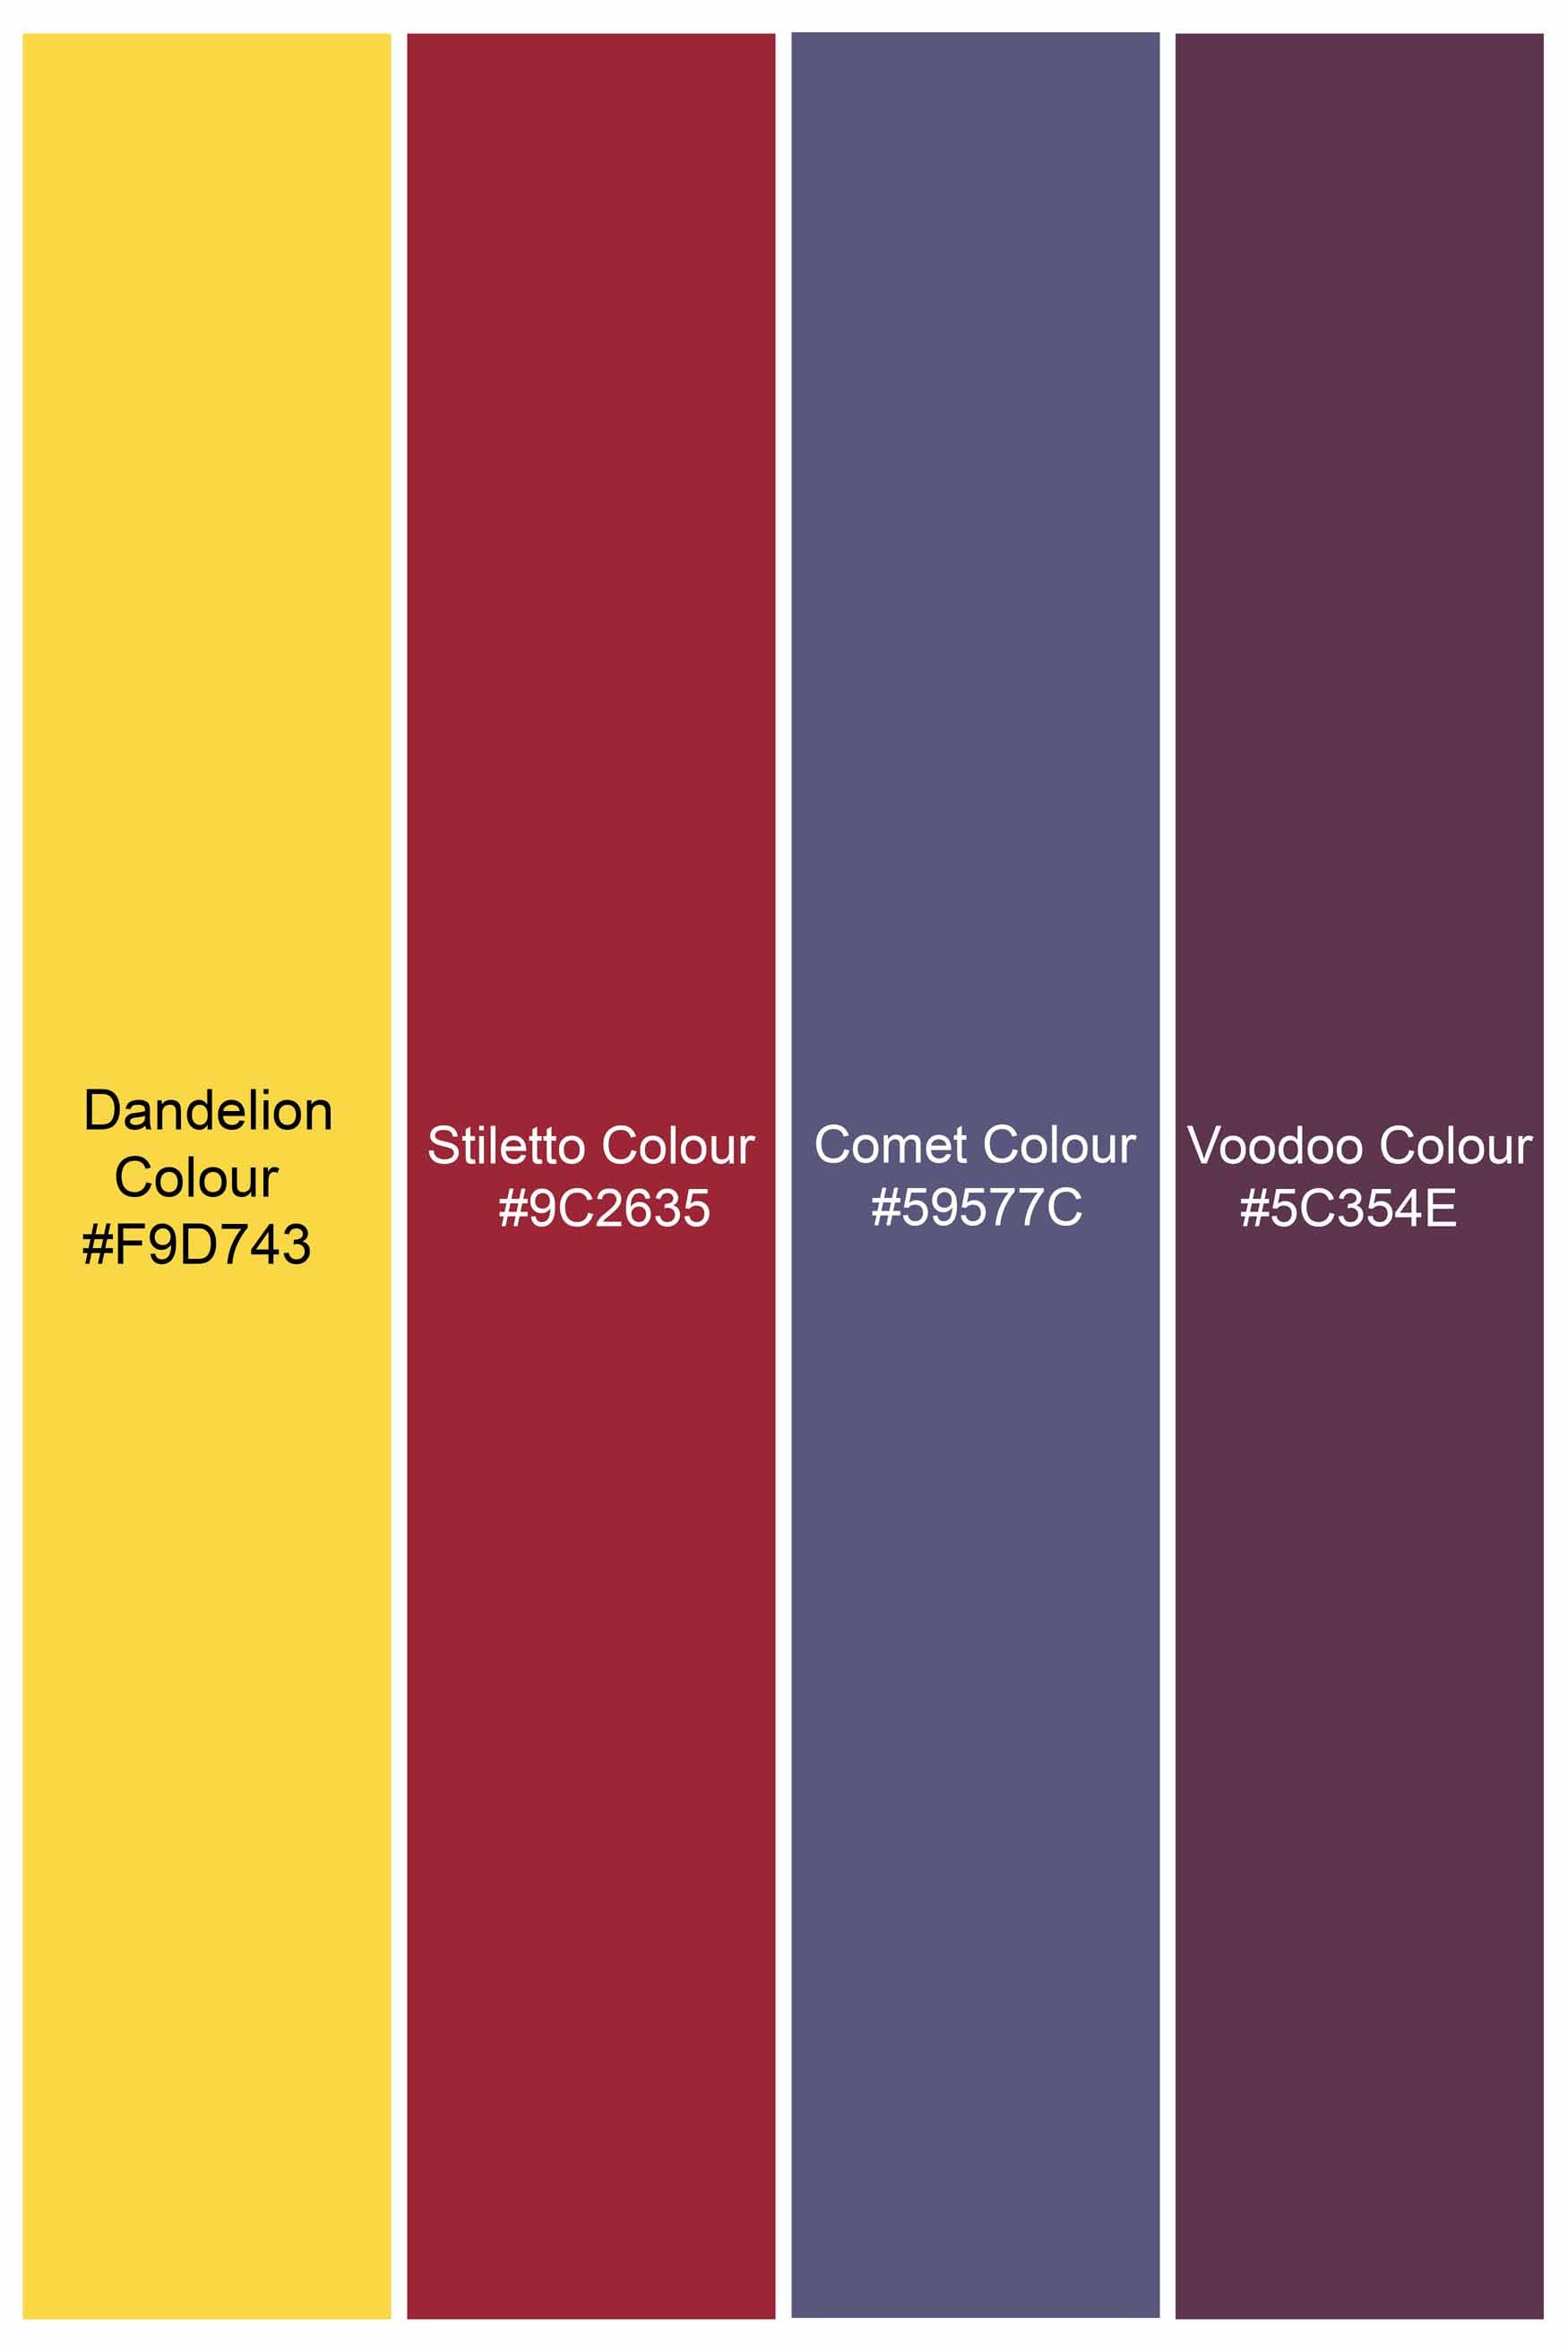 Dandelion Yellow and Stiletto Red Checkered Herringbone Shirt